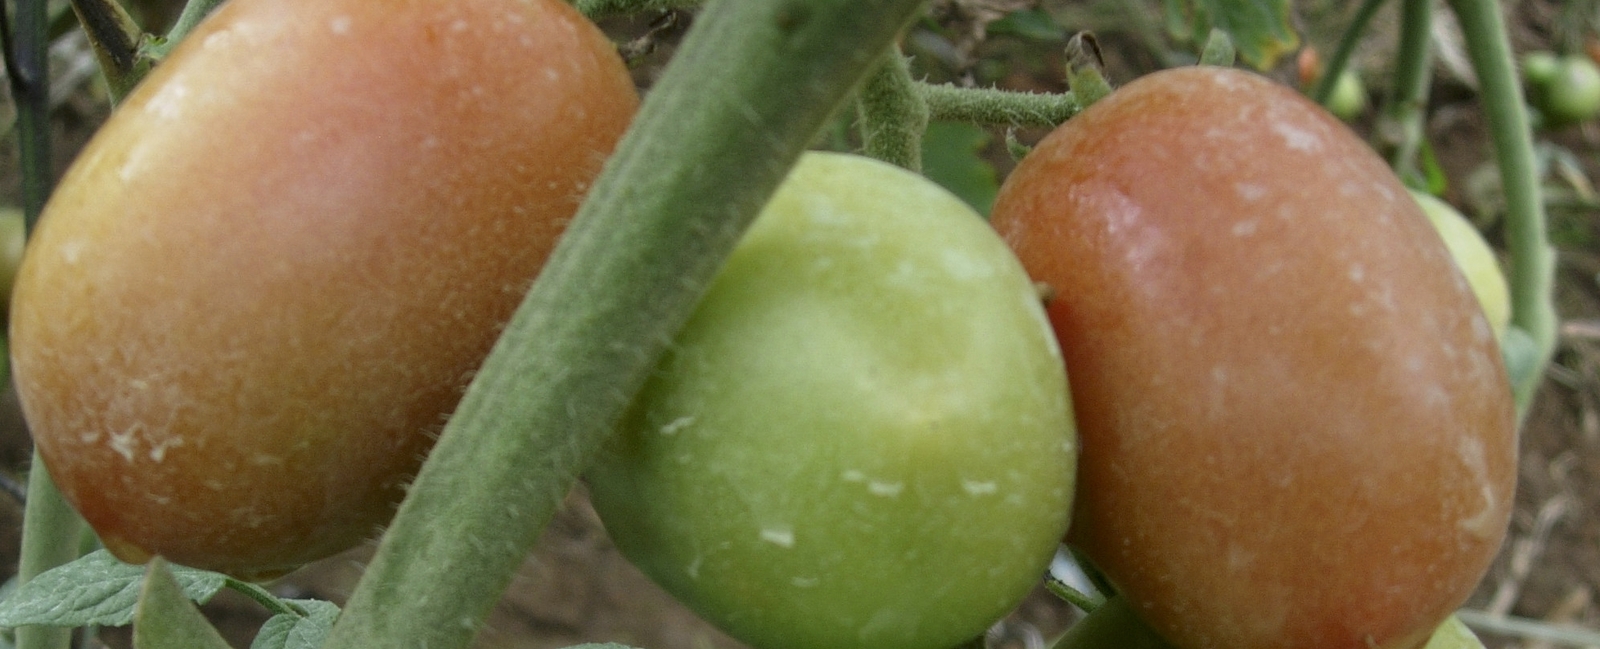 Función del manganeso en la producción de tomate